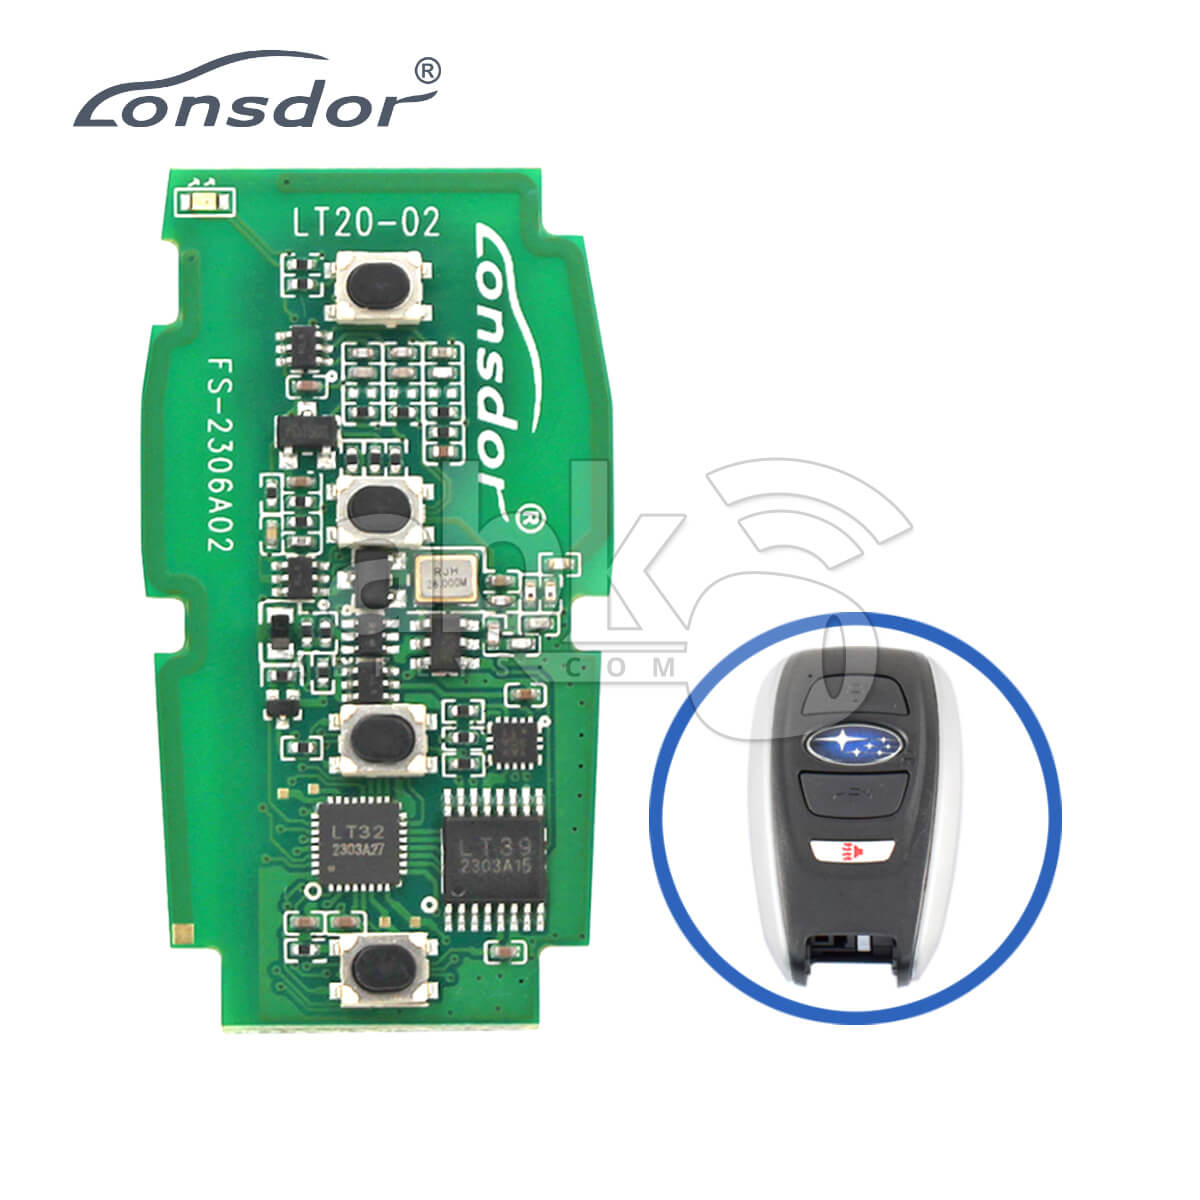 Lonsdor LT20-02 Smart Key PCB 8A+4D For Subaru Adjustable Frequency 4Buttons 5Pcs Bundle -